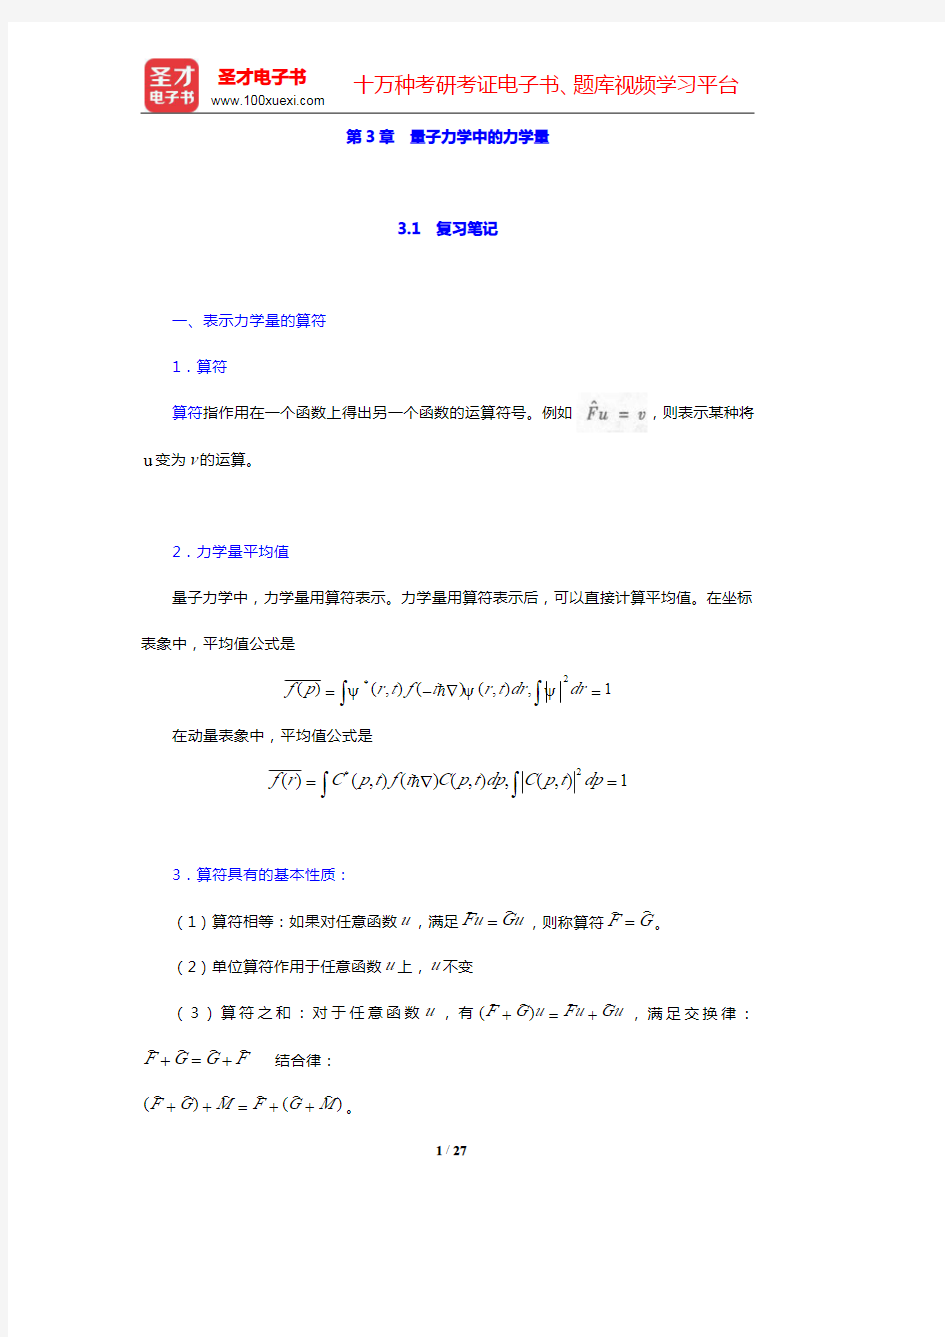 周世勋《量子力学教程》(第2版)-量子力学中的力学量笔记和课后习题(含考研真题)详解(圣才出品)